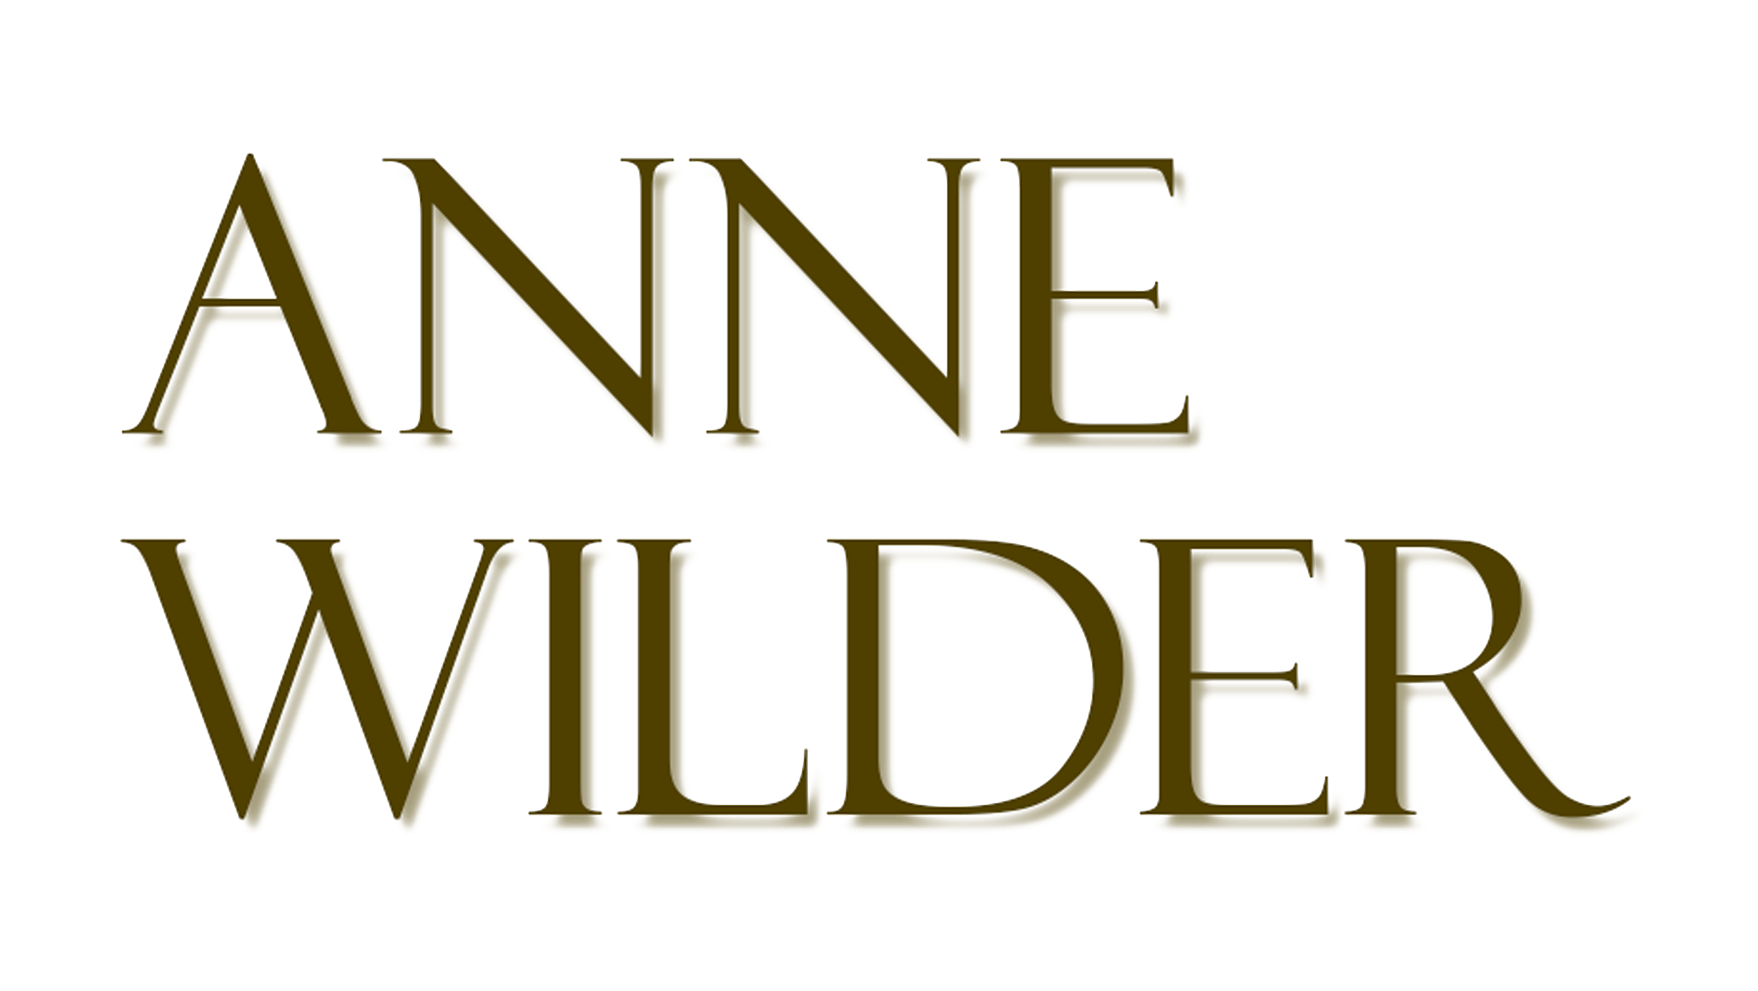 Anne Wilder